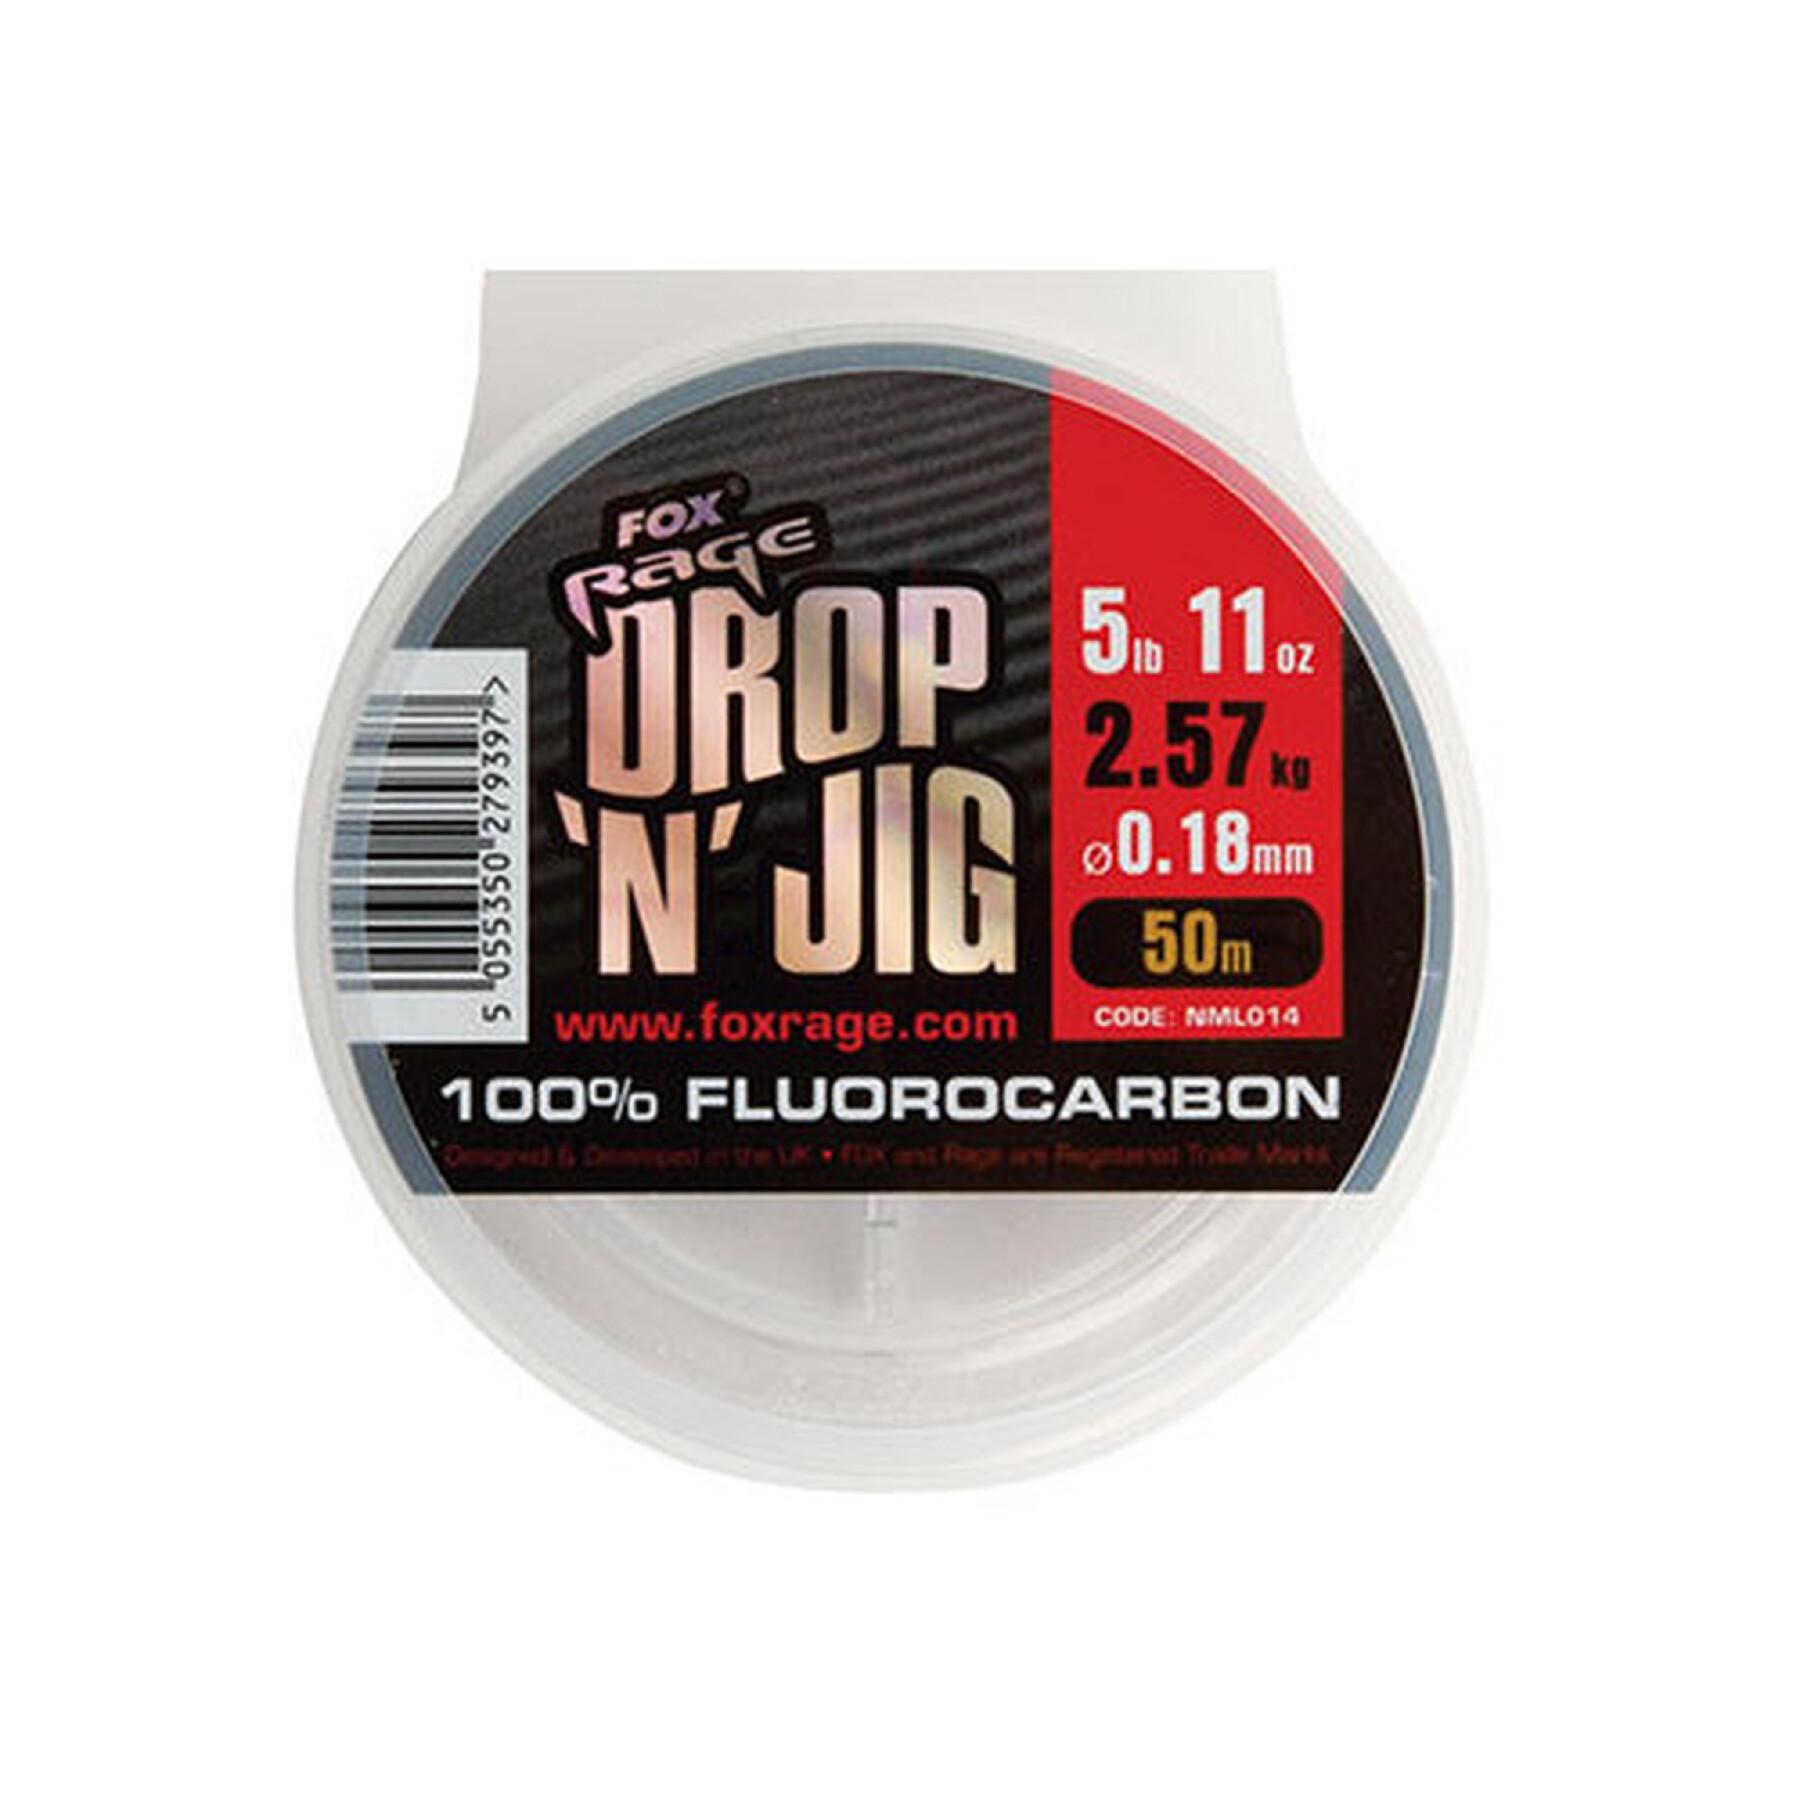 Fluorkarbon Fox Rage drop & jig 2.57kg / 5.67lb x 50m